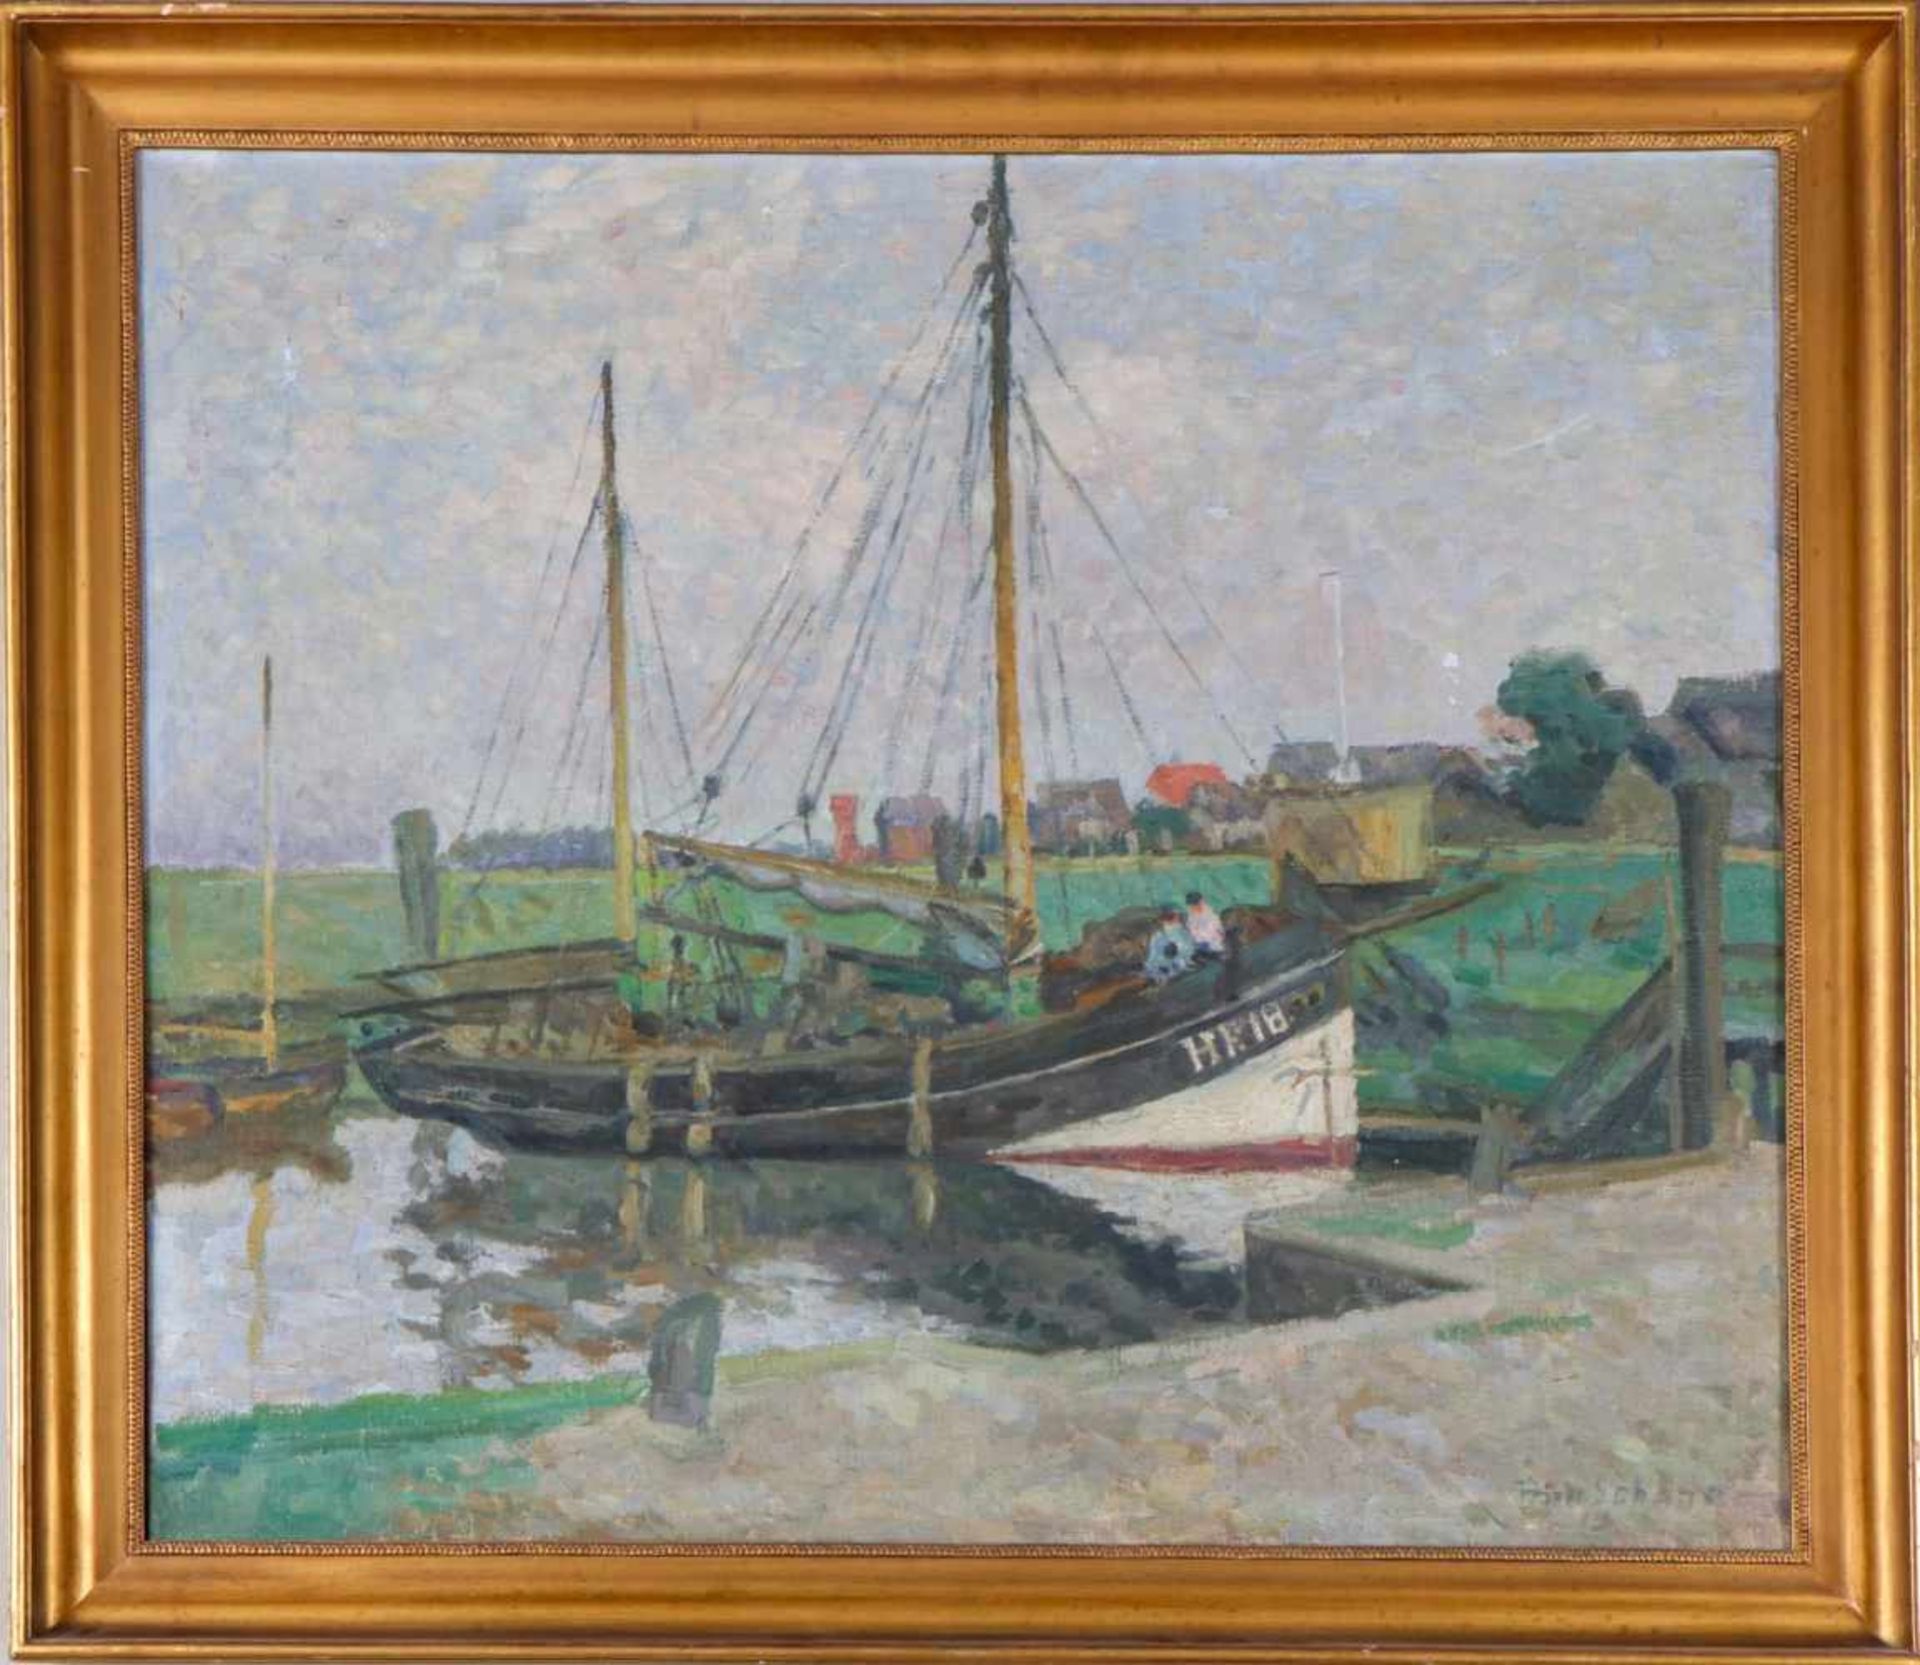 FRIEDRICH SCHAPER (1869 Braunschweig - 1956 Hamburg)Öl auf Leinwand, ¨Finkenwerder Kutter im Hafen